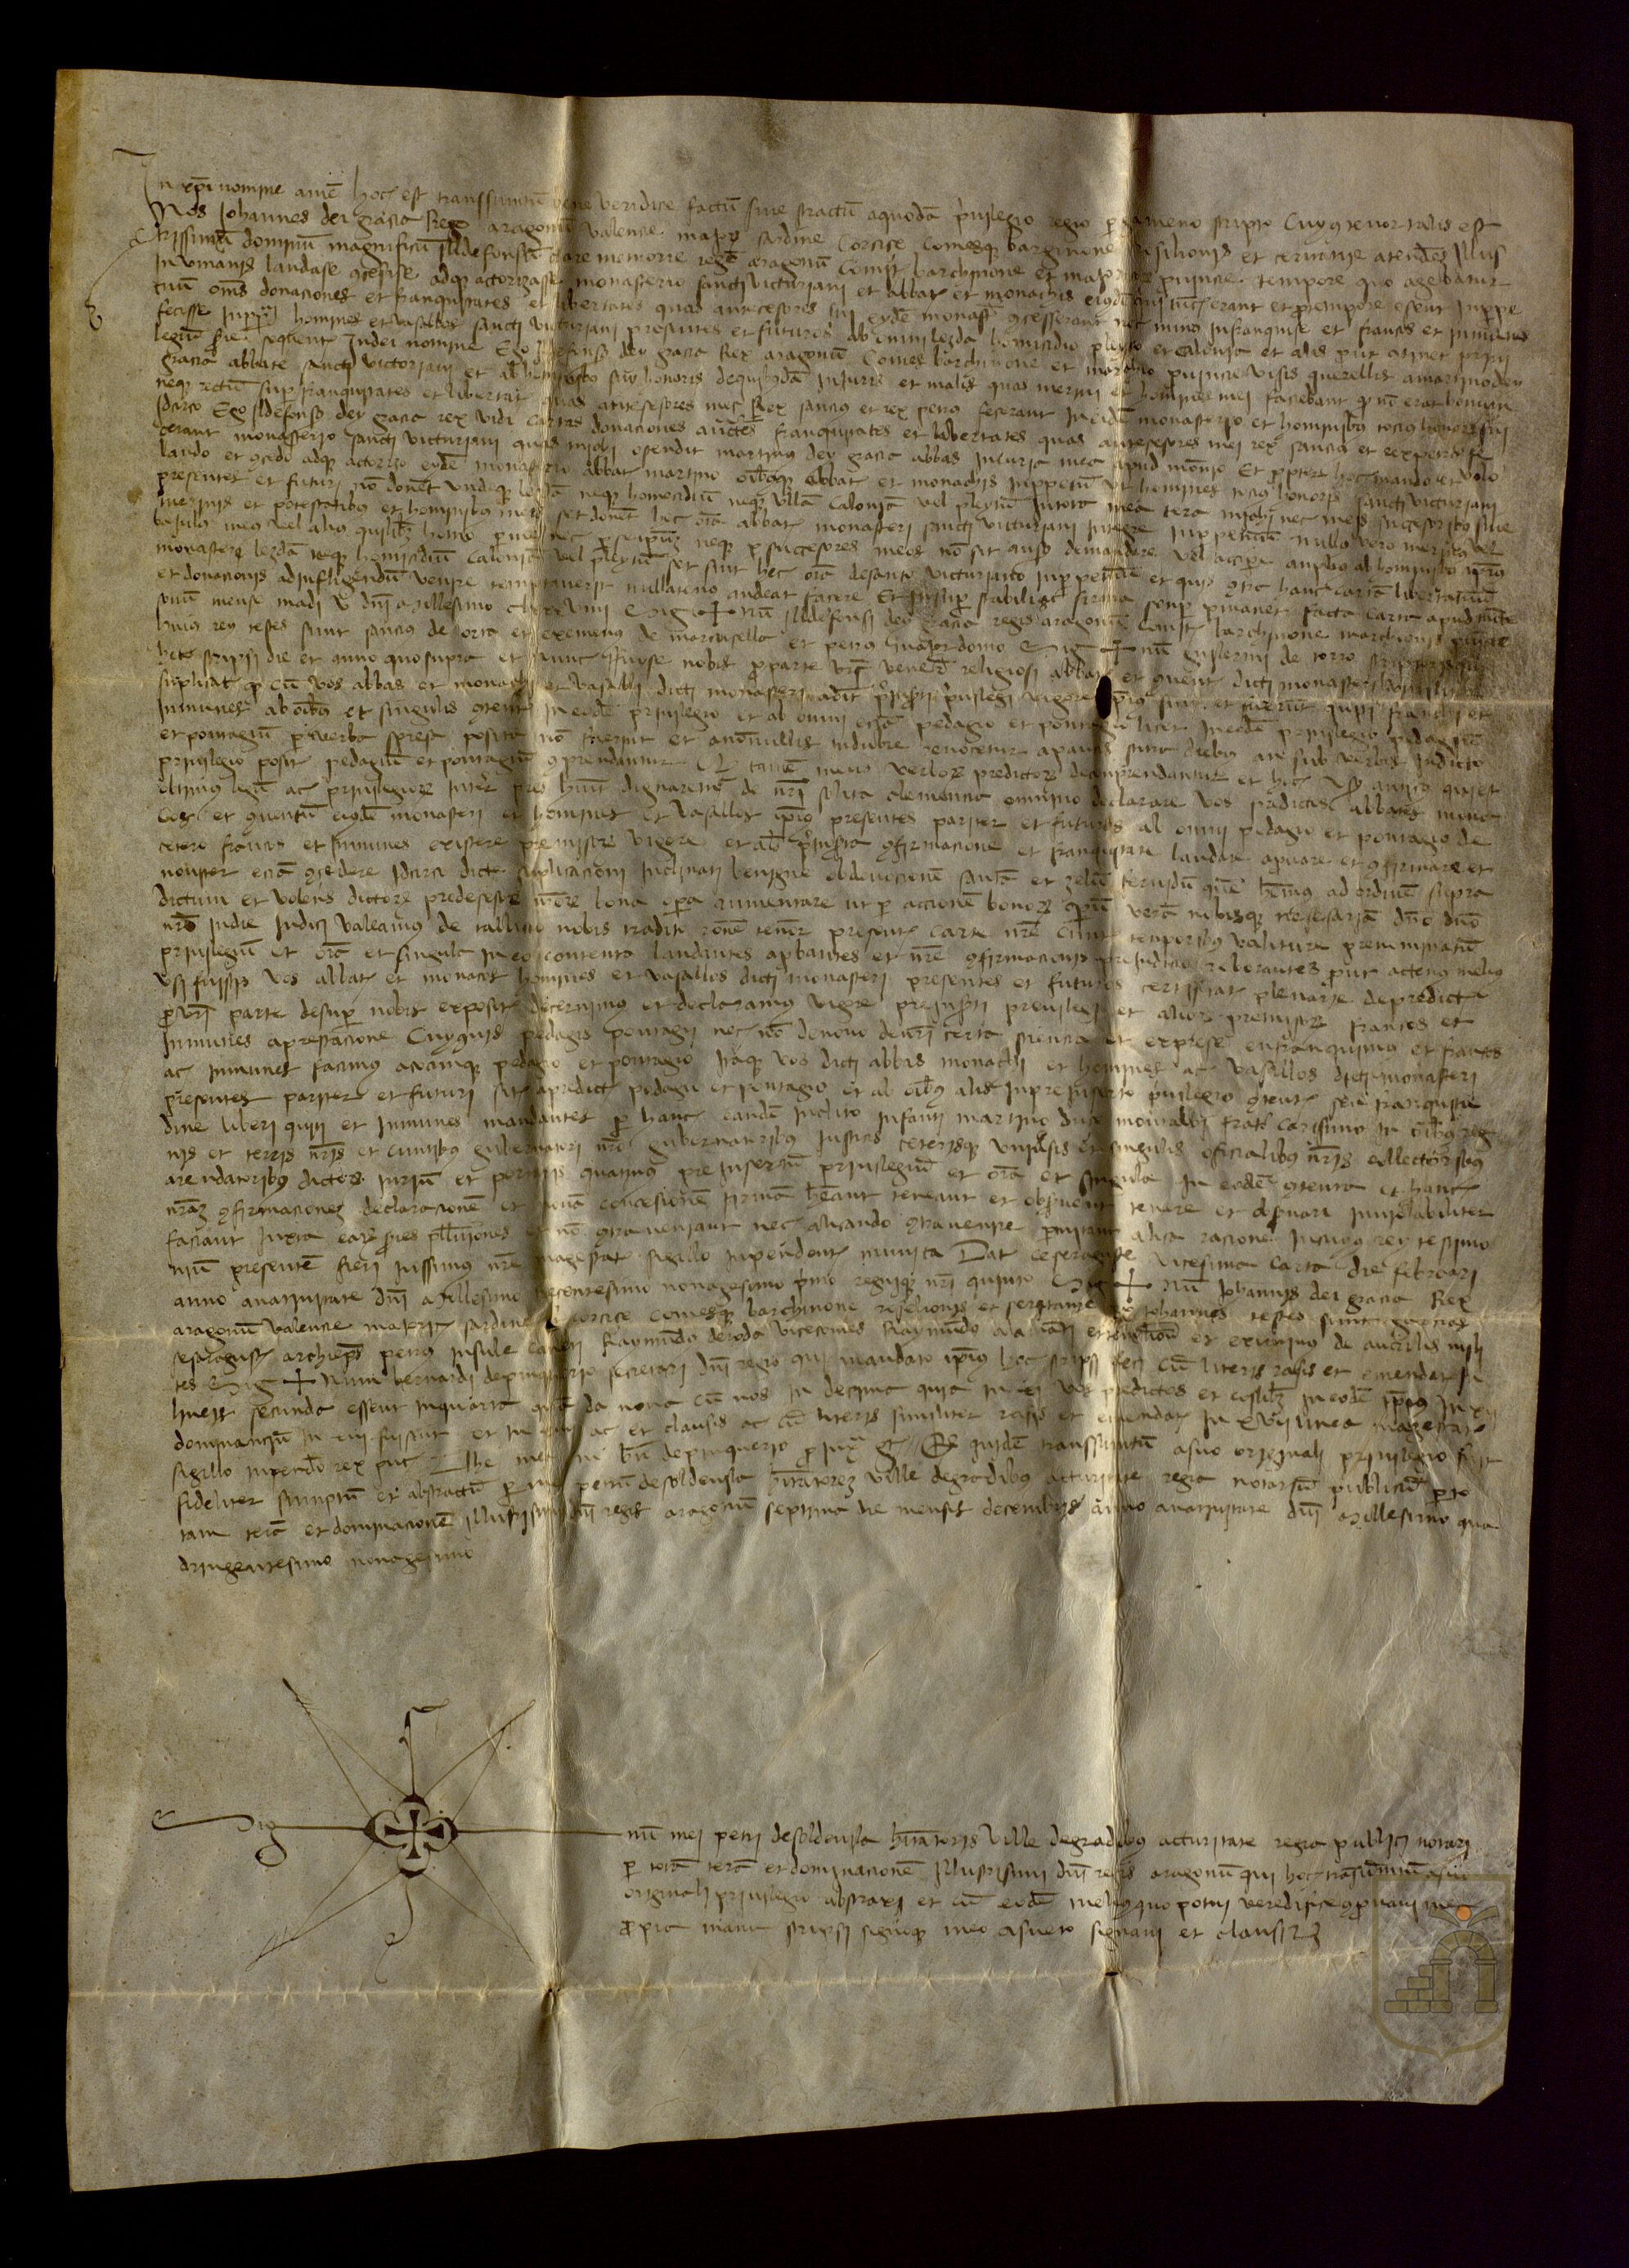 Juan I, rey de Aragón, confirma al monasterio de San Victorián y sus hombres un privilegio otorgado por Alfonso II en 1189 por el que se les libera del pago de lezdas, homicidios, calonias o pleitos a los oficiales reales